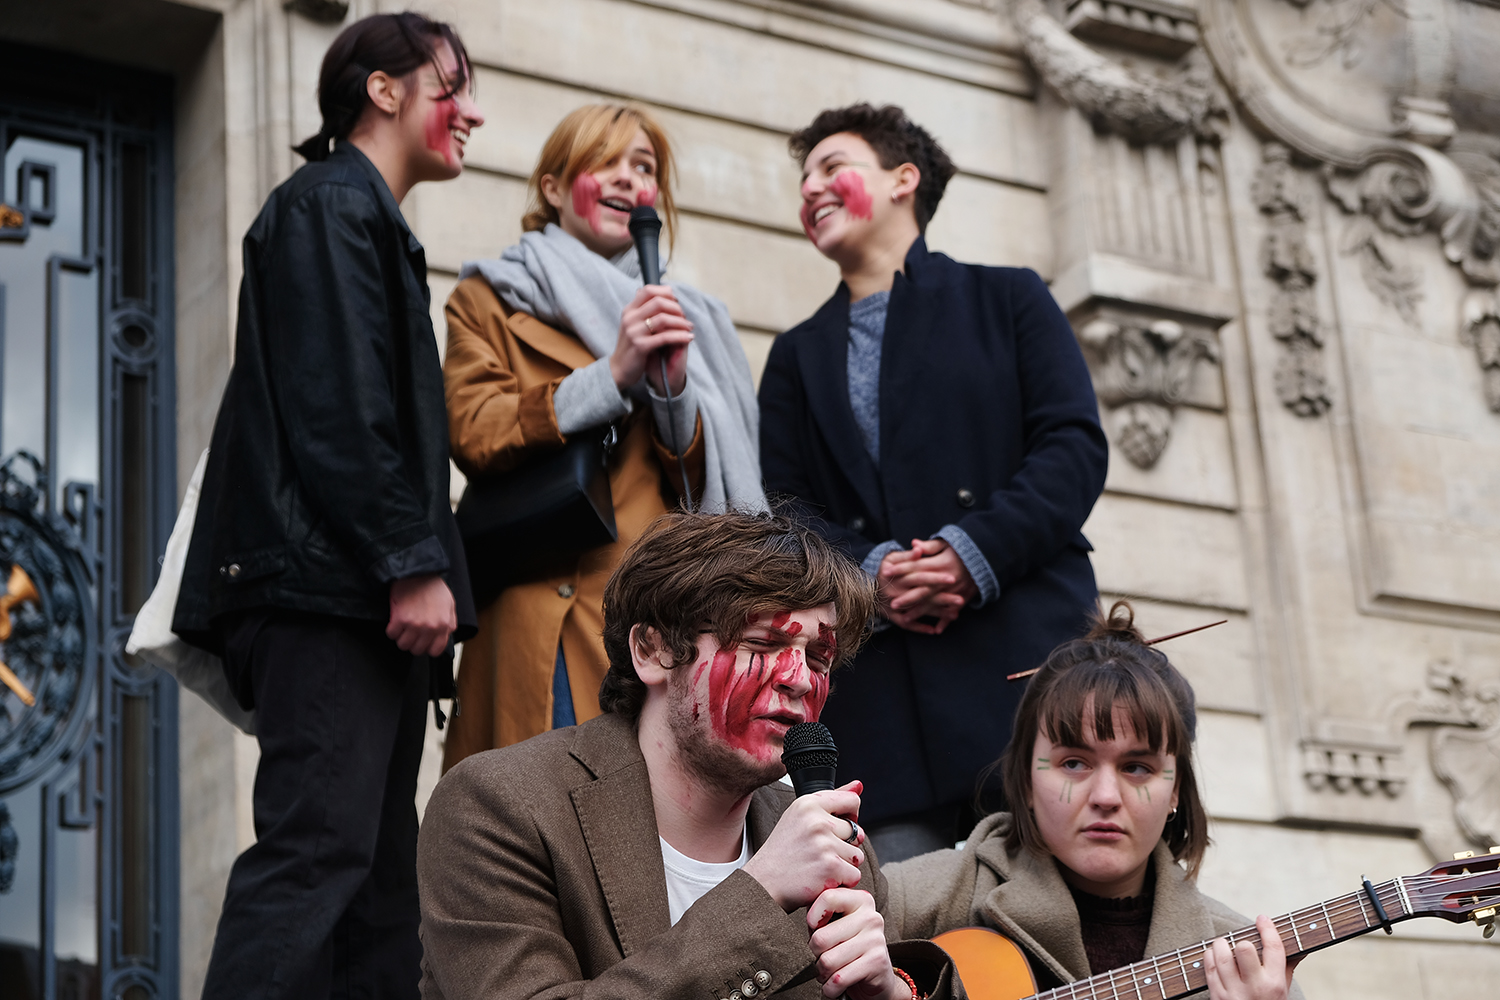 Maquillés de rouge pour symboliser la terre meurtrie, Gaultier et ses amies reprennent une chanson de la chanteuse norvégienne Aurora © Globe Reporters